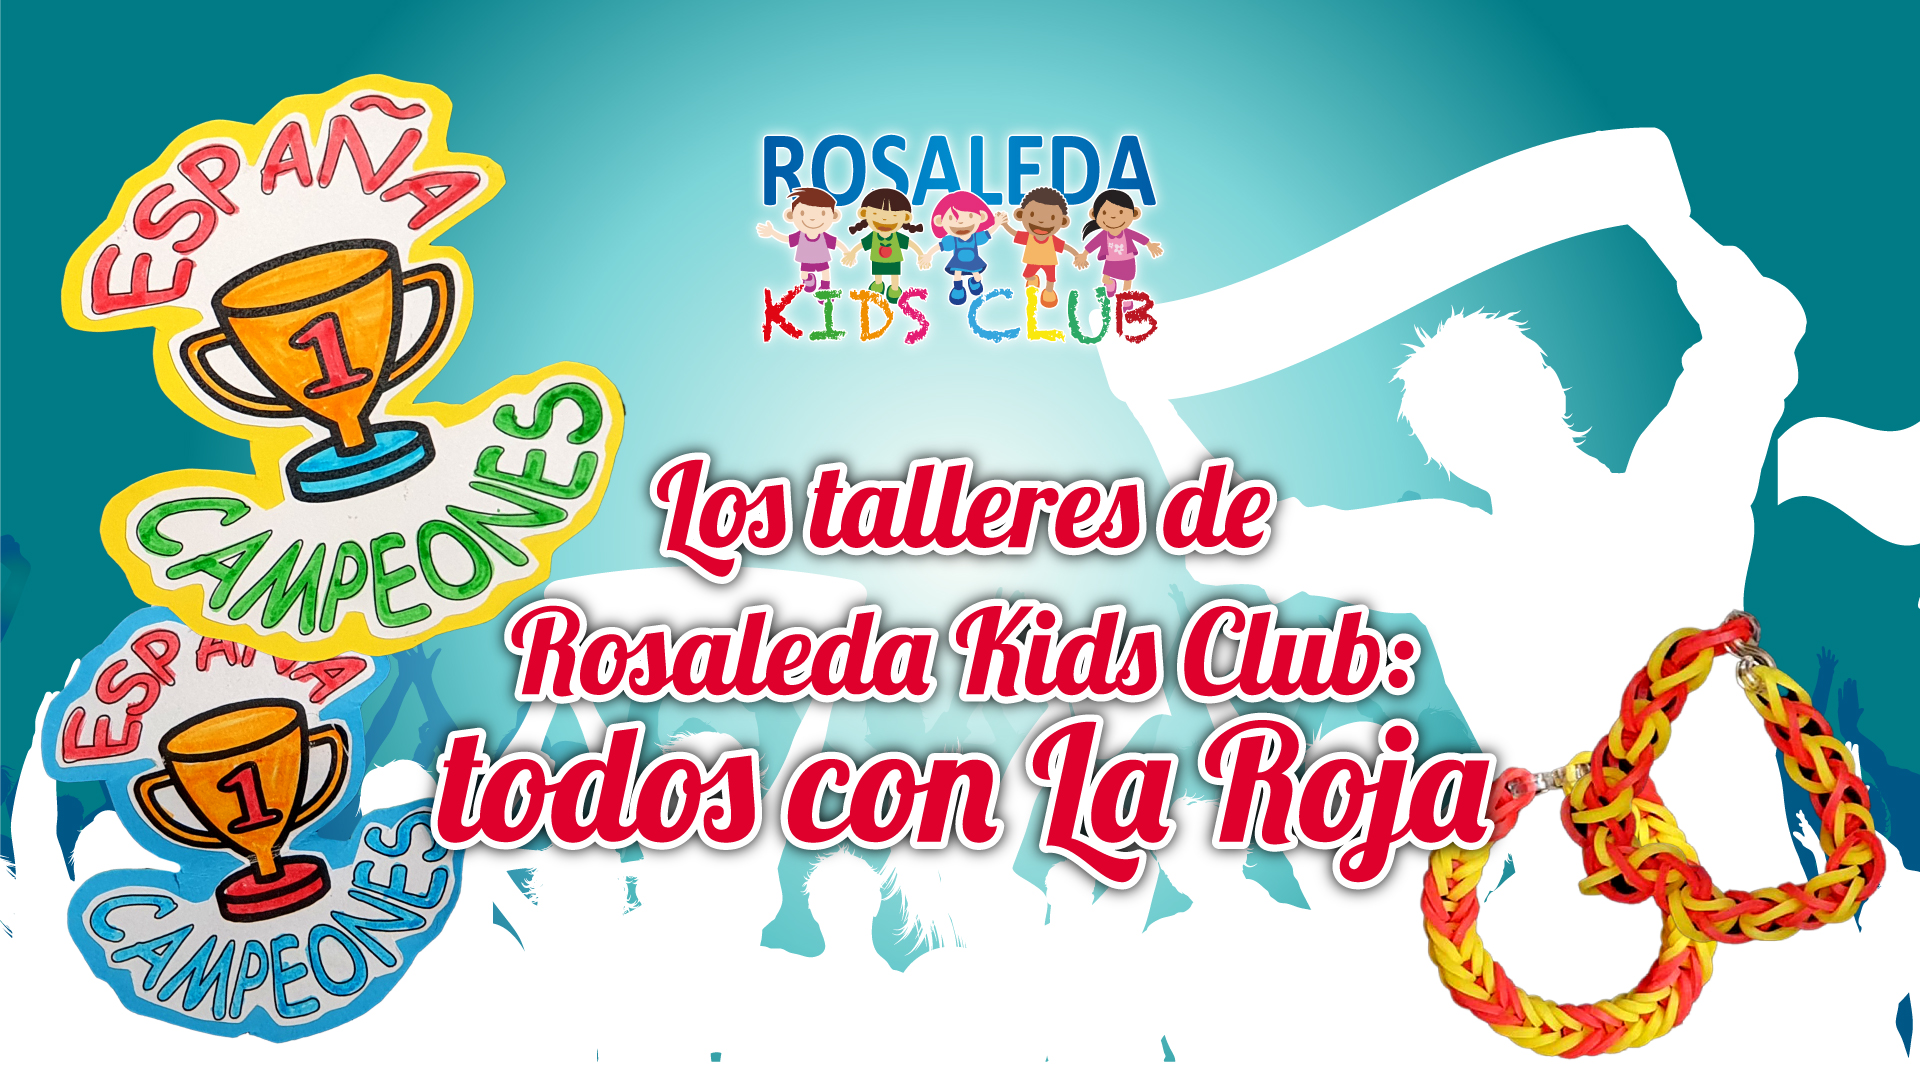 Los talleres de Rosaleda Kids Club: todos con La Roja